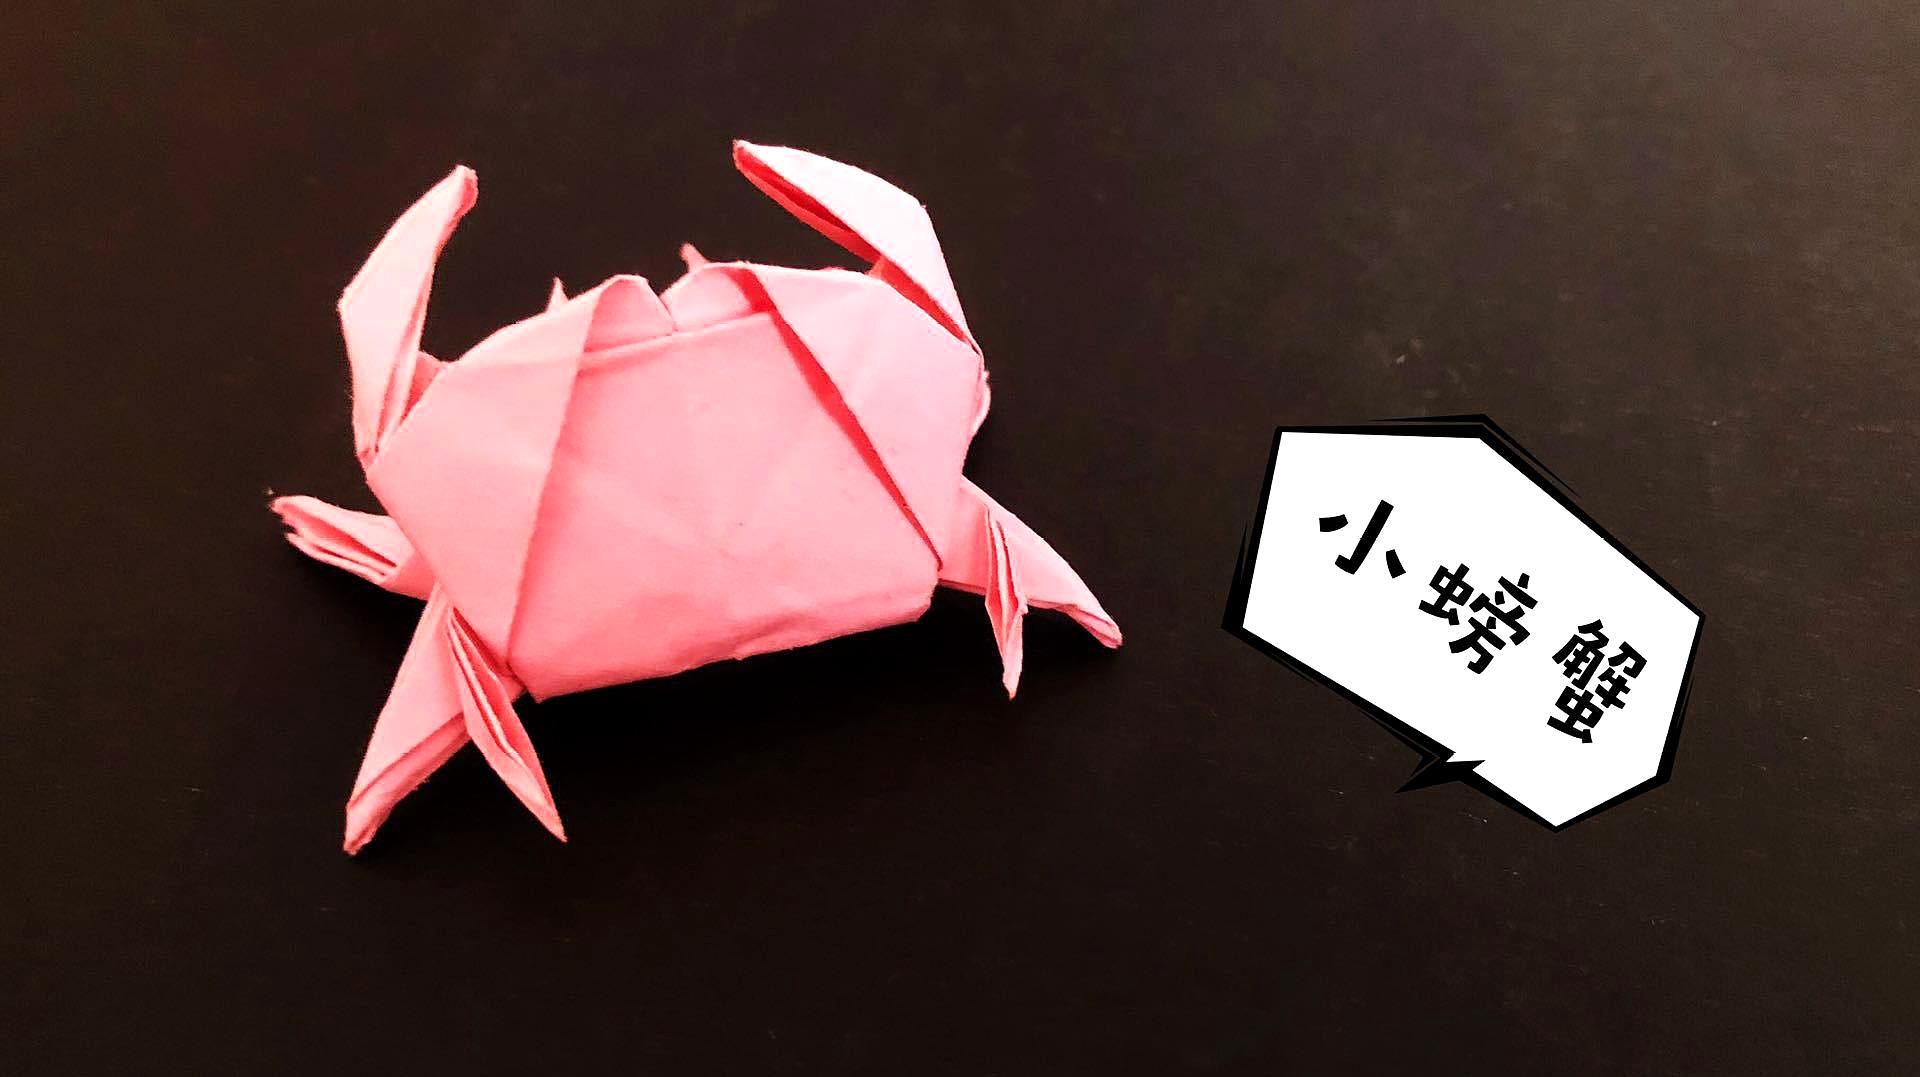 折纸教程:教你折款横行的小螃蟹,留着做亲子游戏不错哦!